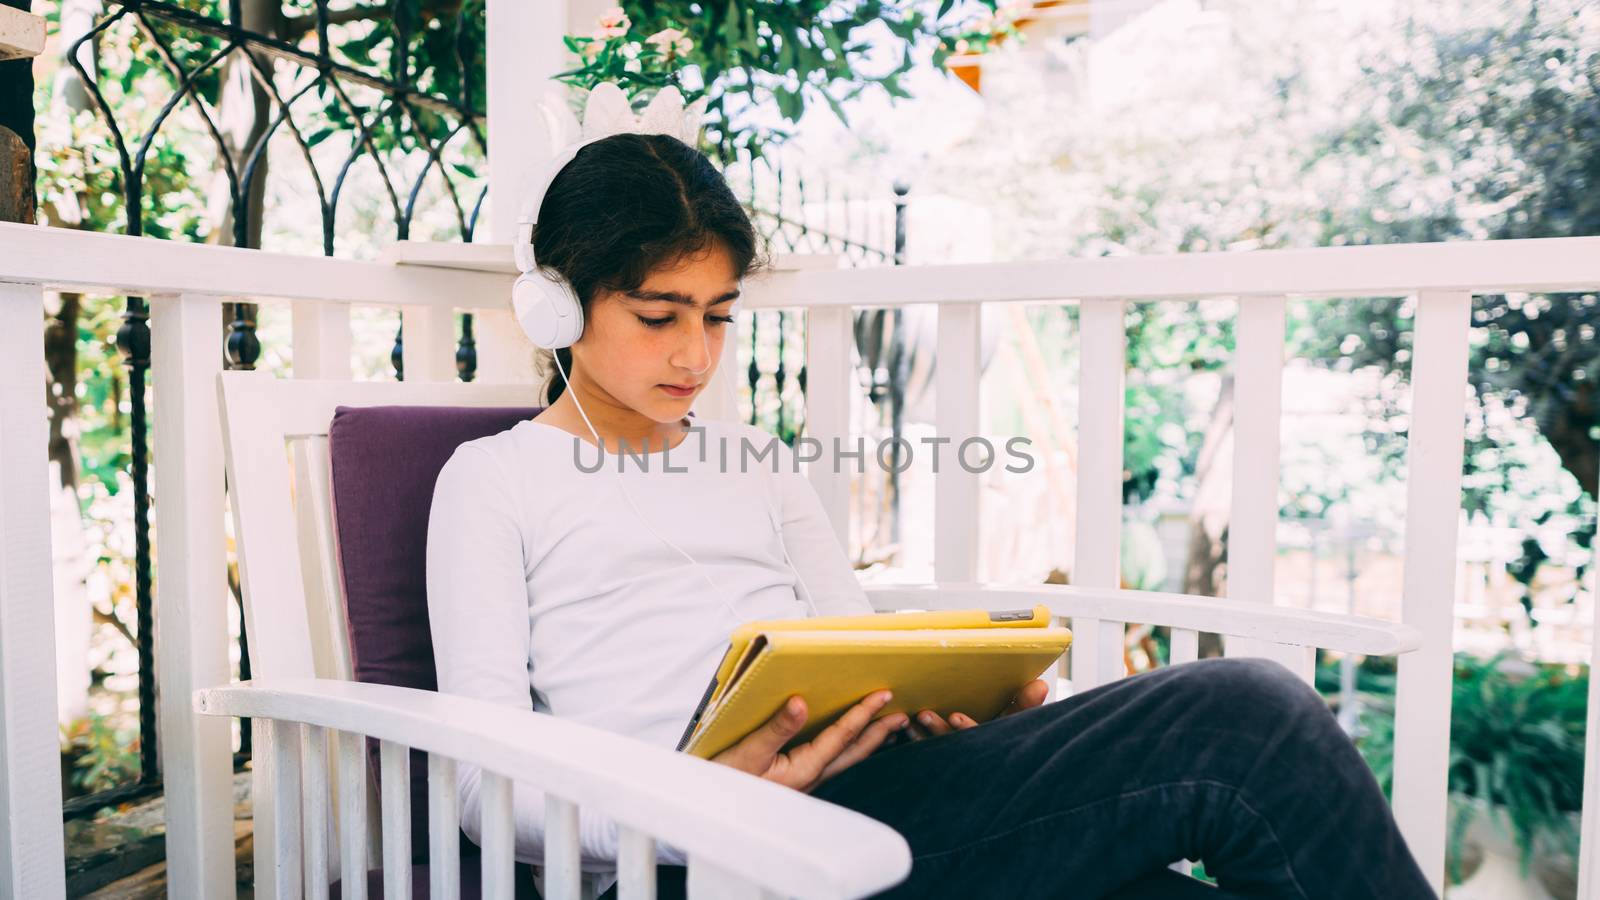 She seats outside in the garden, wearing headphones.